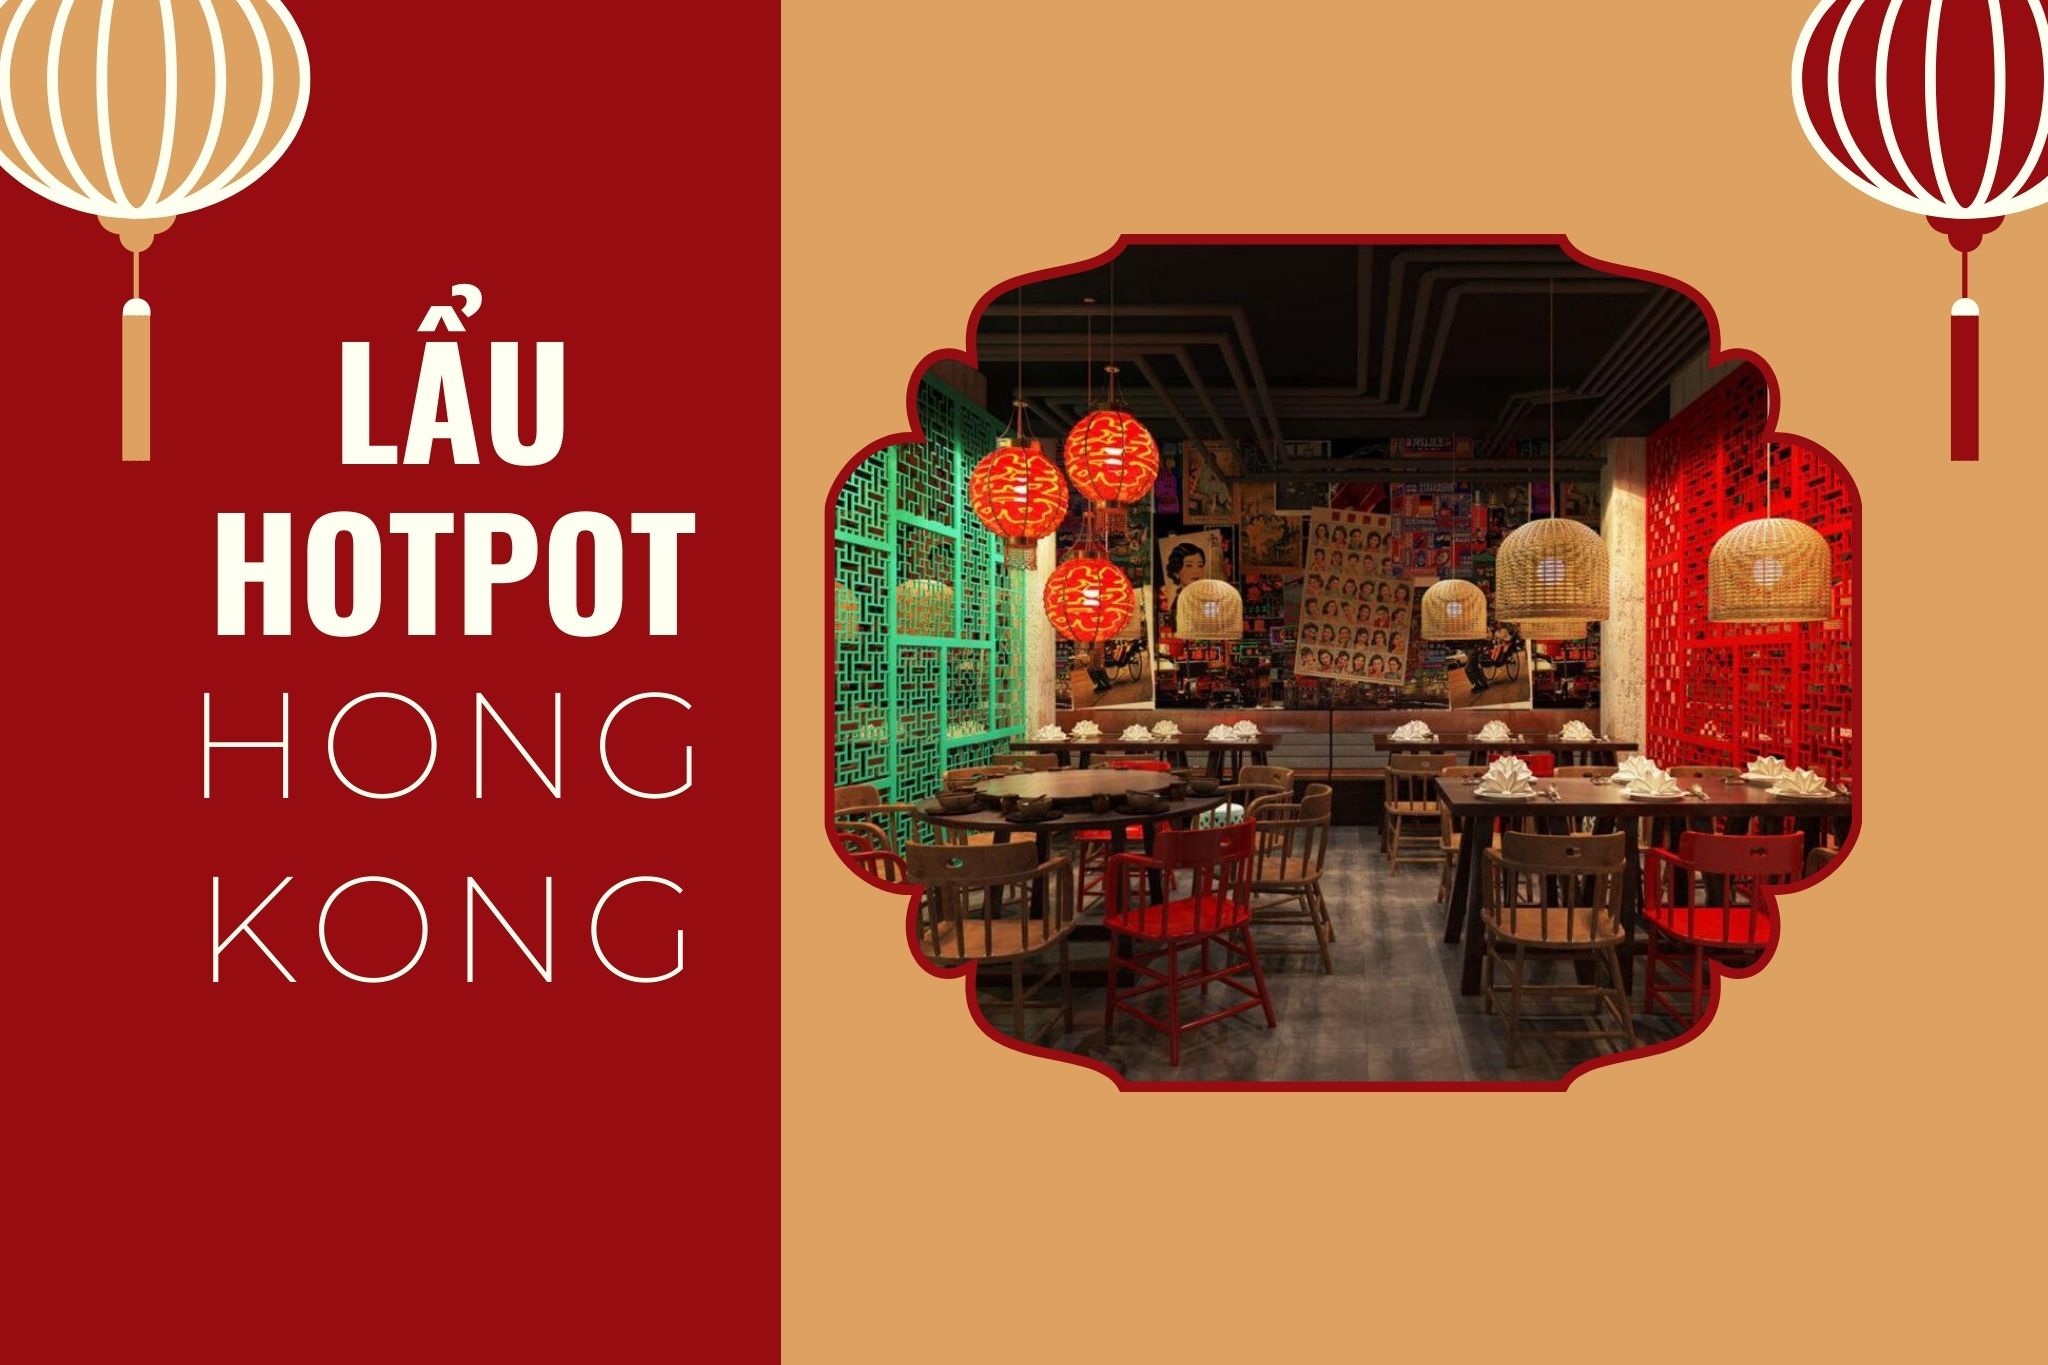 Tại sao mô hình lẩu hotpot phong cách Hong Kong lại thu hút đến vậy?